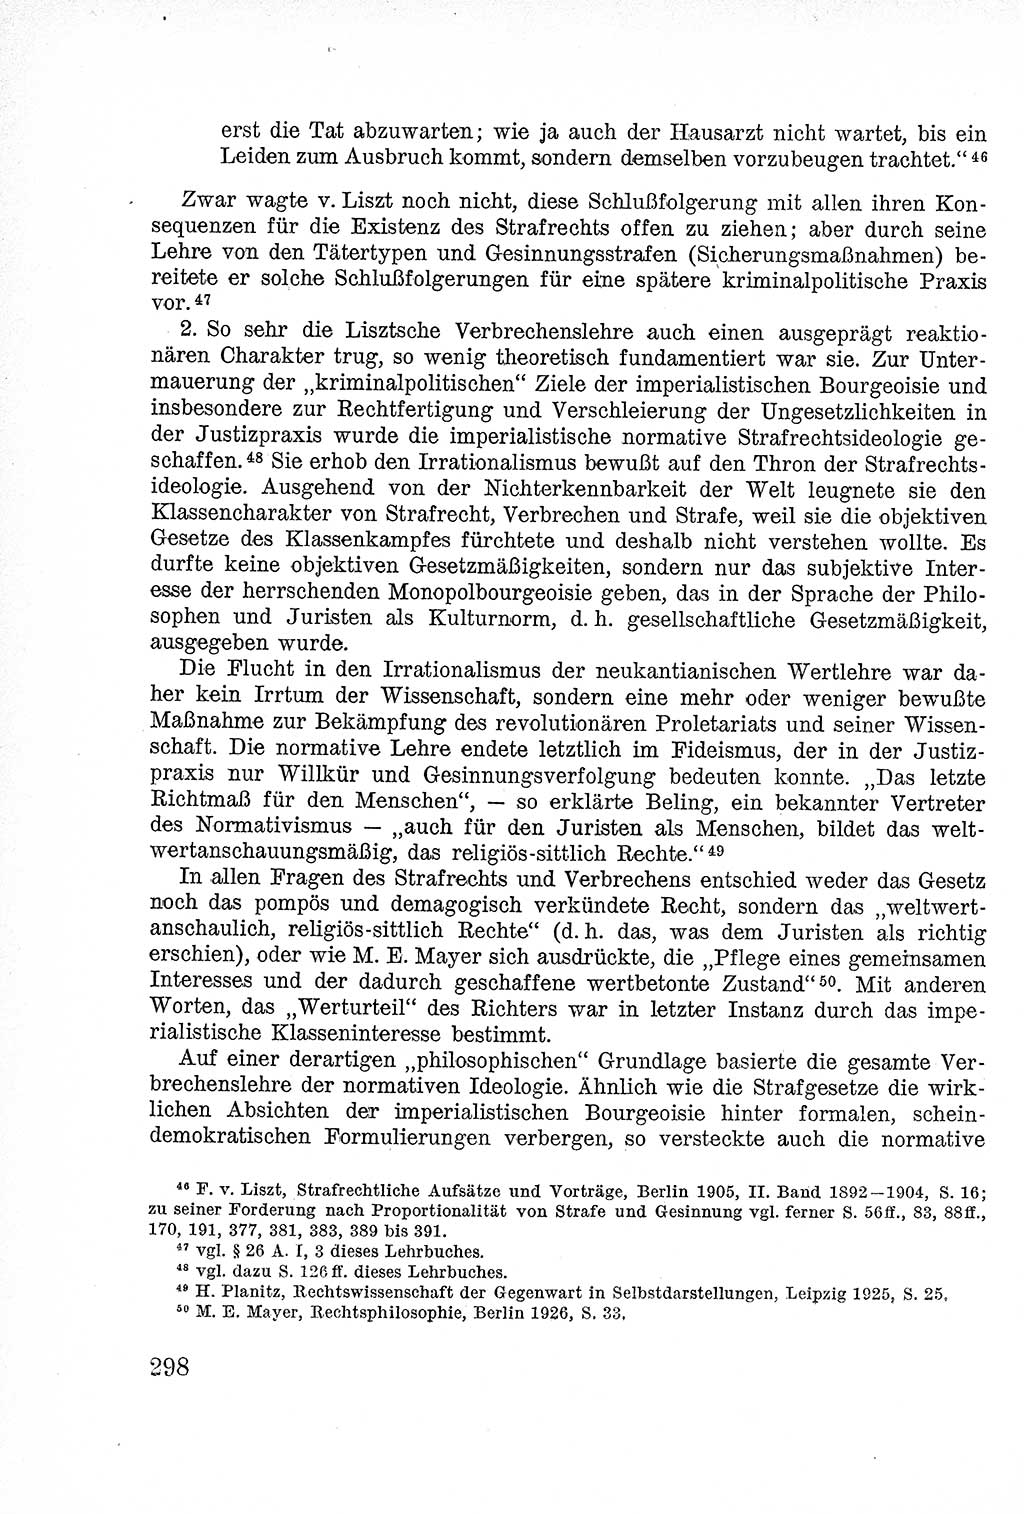 Lehrbuch des Strafrechts der Deutschen Demokratischen Republik (DDR), Allgemeiner Teil 1957, Seite 298 (Lb. Strafr. DDR AT 1957, S. 298)